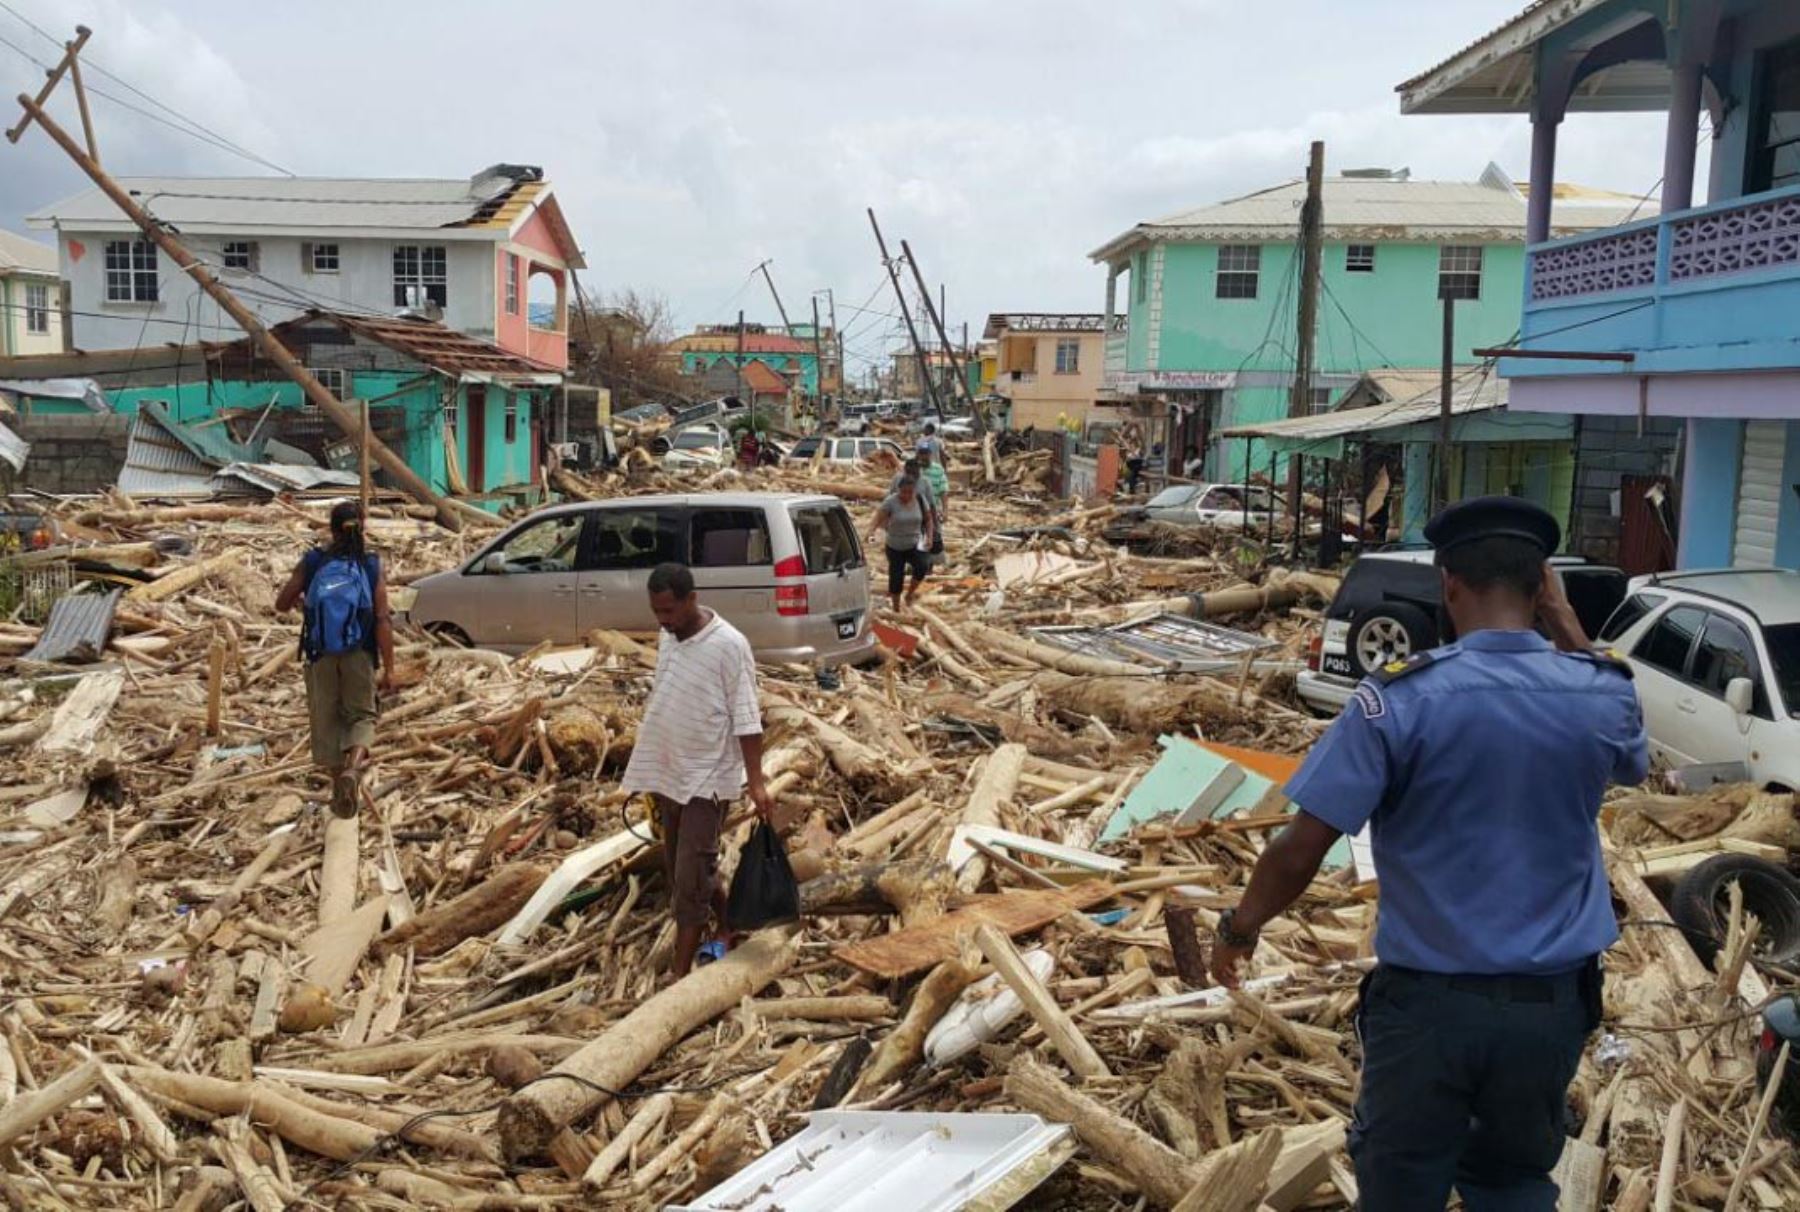 Daños causados por el huracán María en Roseau, Dominica. Foto: AFP